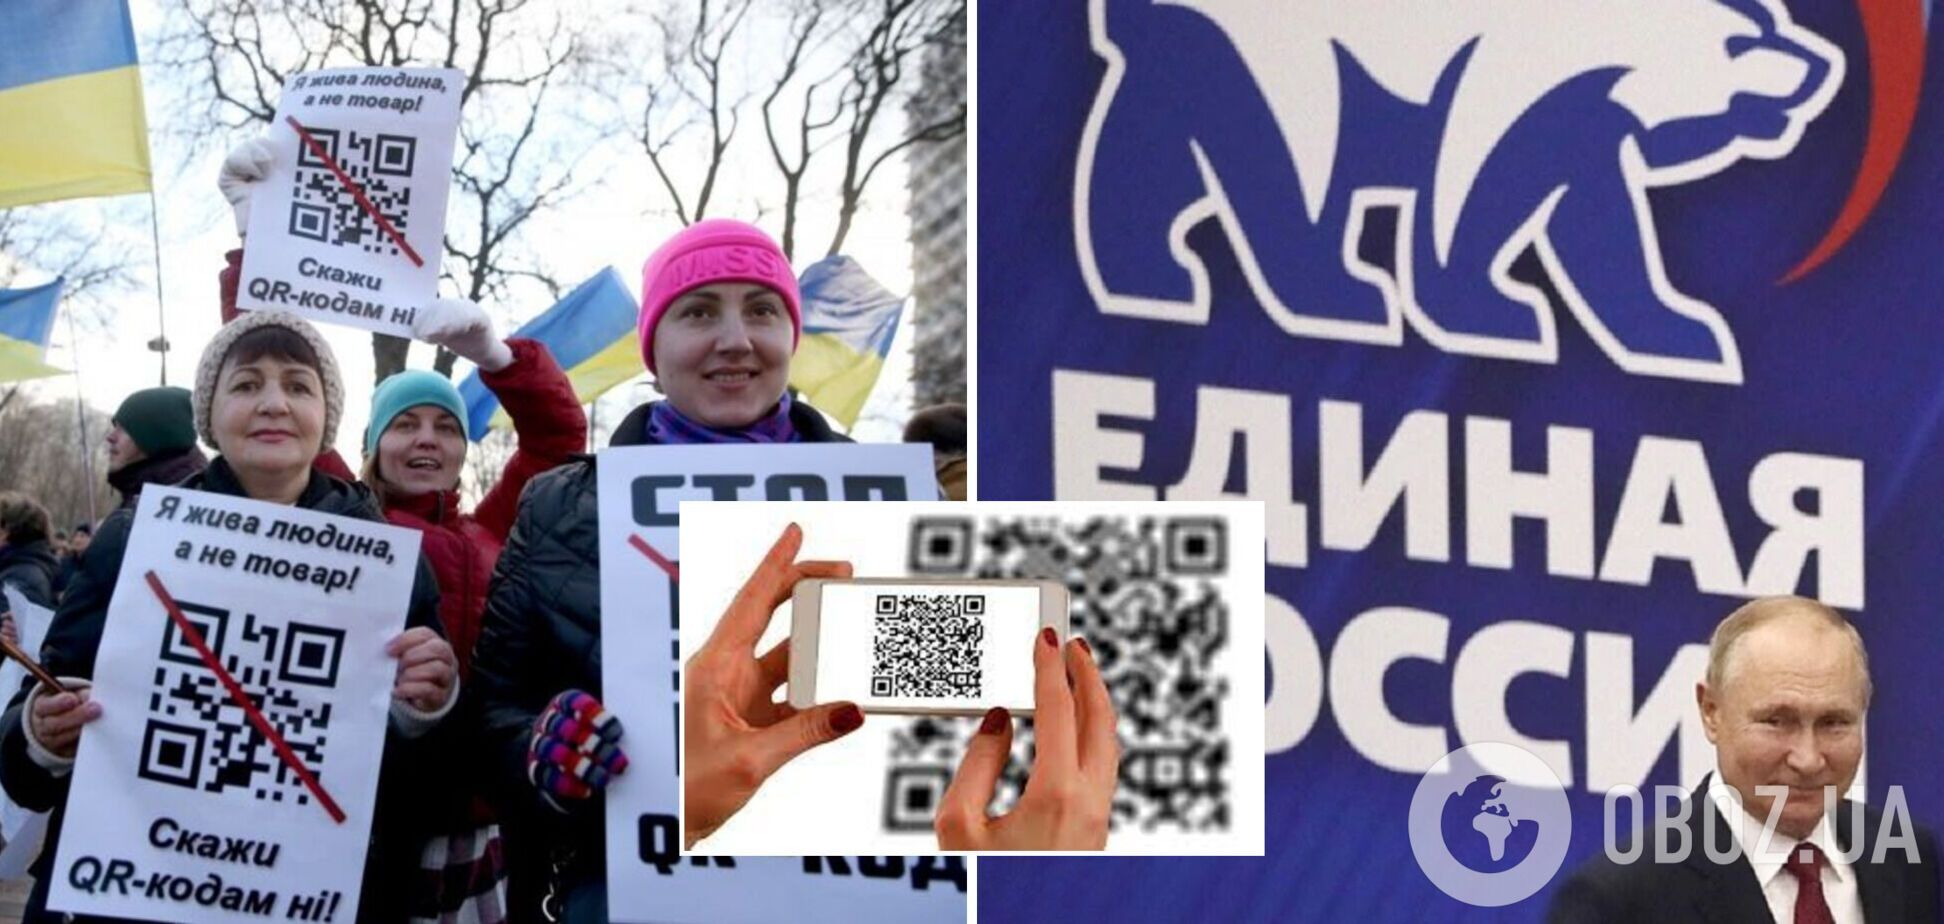 Коди на плакатах антивакцинаторів у Києві ведуть на сайт пропутінської партії